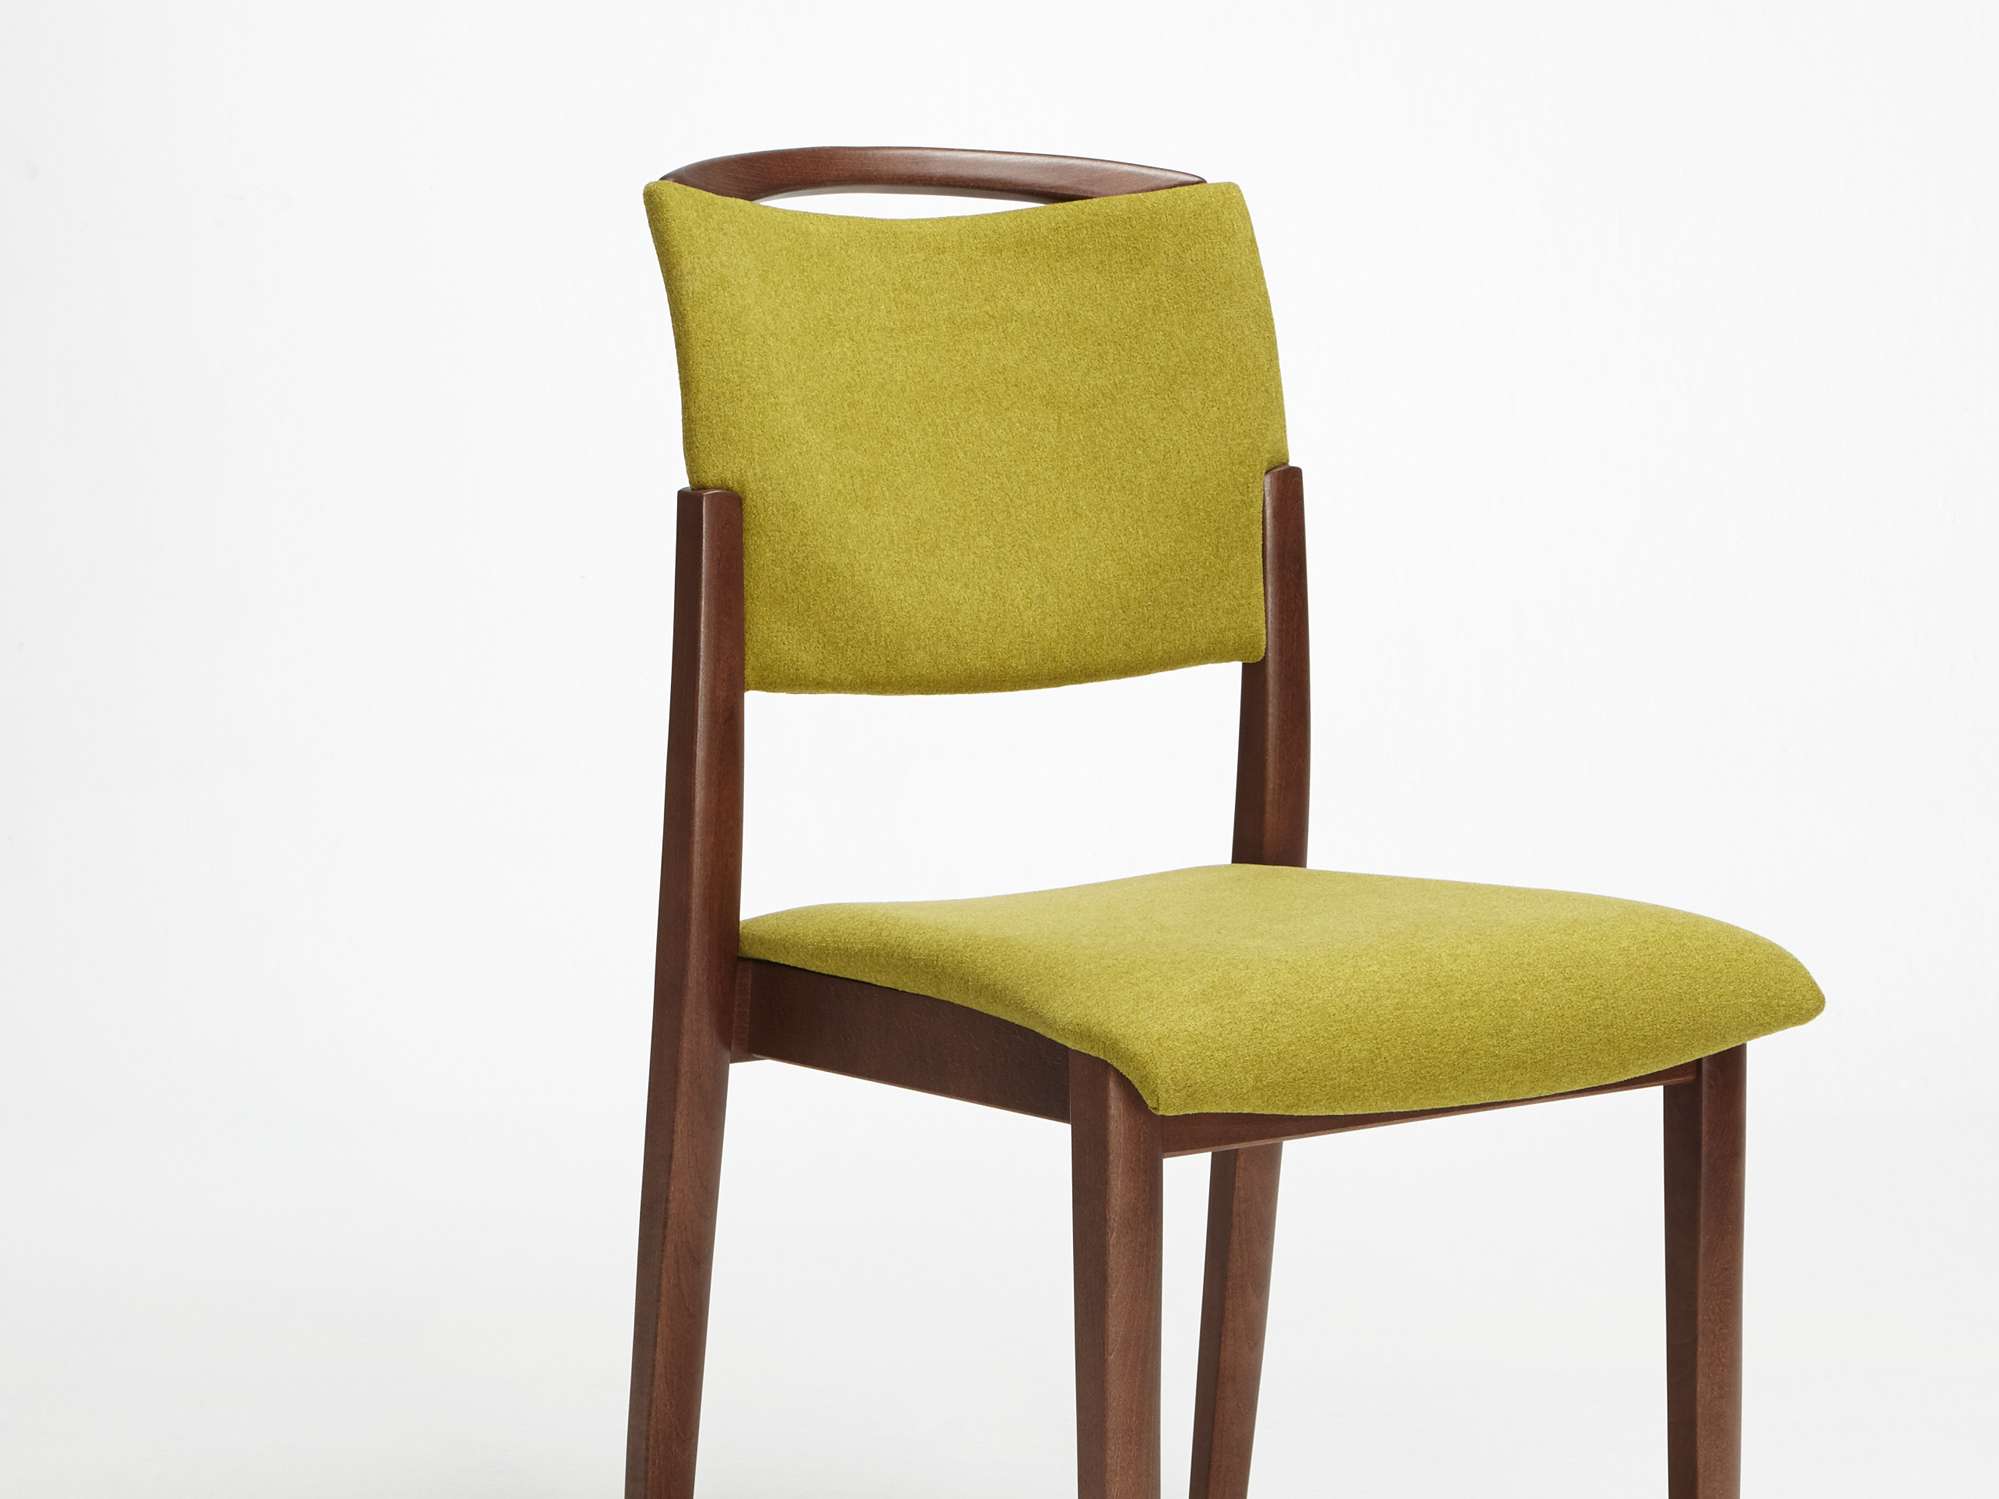 Modèle Fena version chaise empilable avec main courante sans accoudoirs